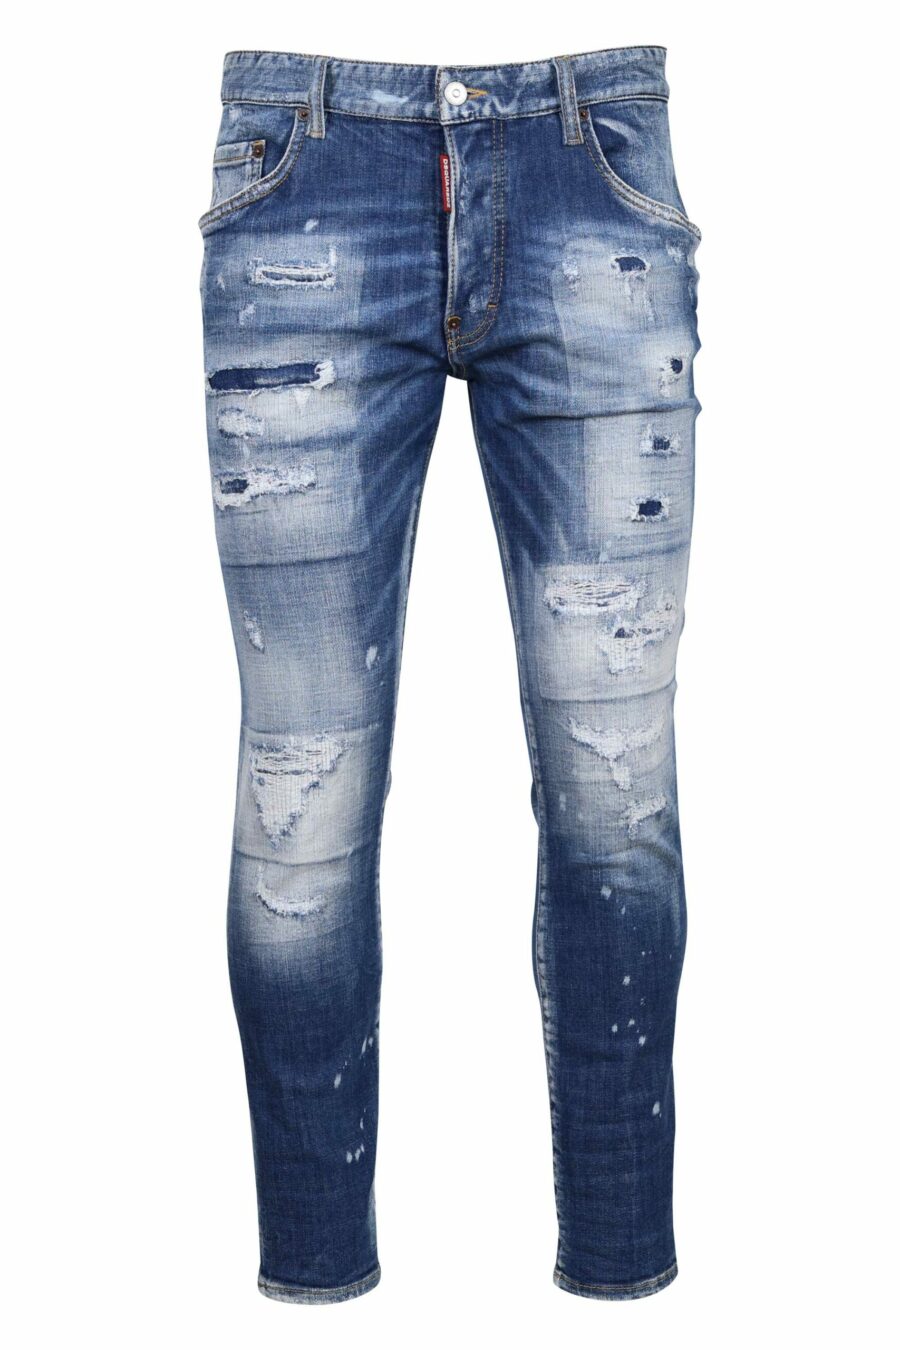 Calças de ganga azuis claras "skater jean" com rasgões e desgastadas - 8054148338848